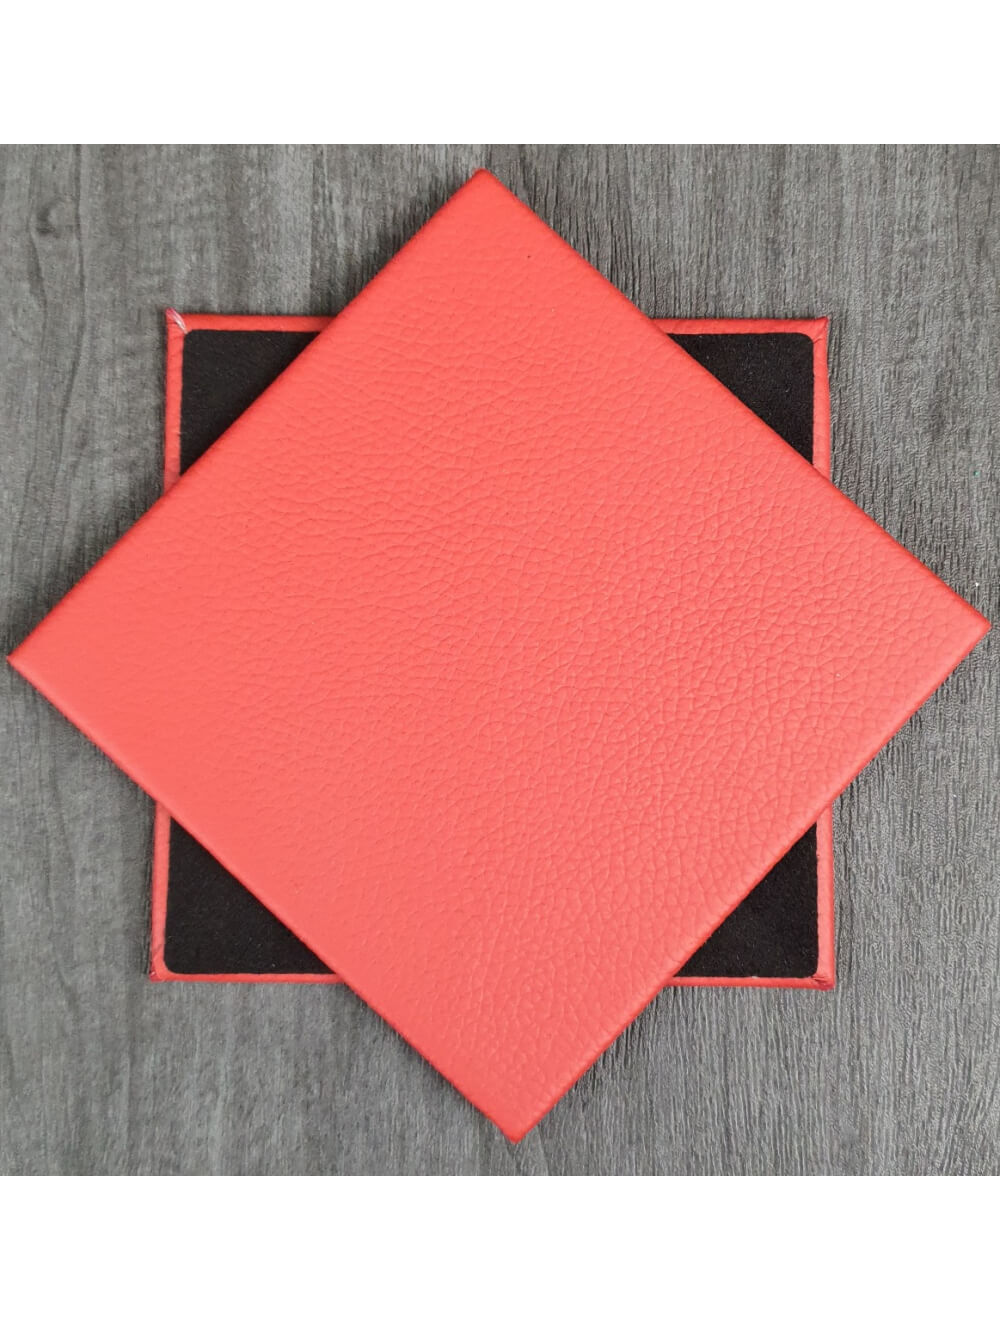 Poppy Shelly Leather Coaster- 10 cm SQ (artículo de venta)